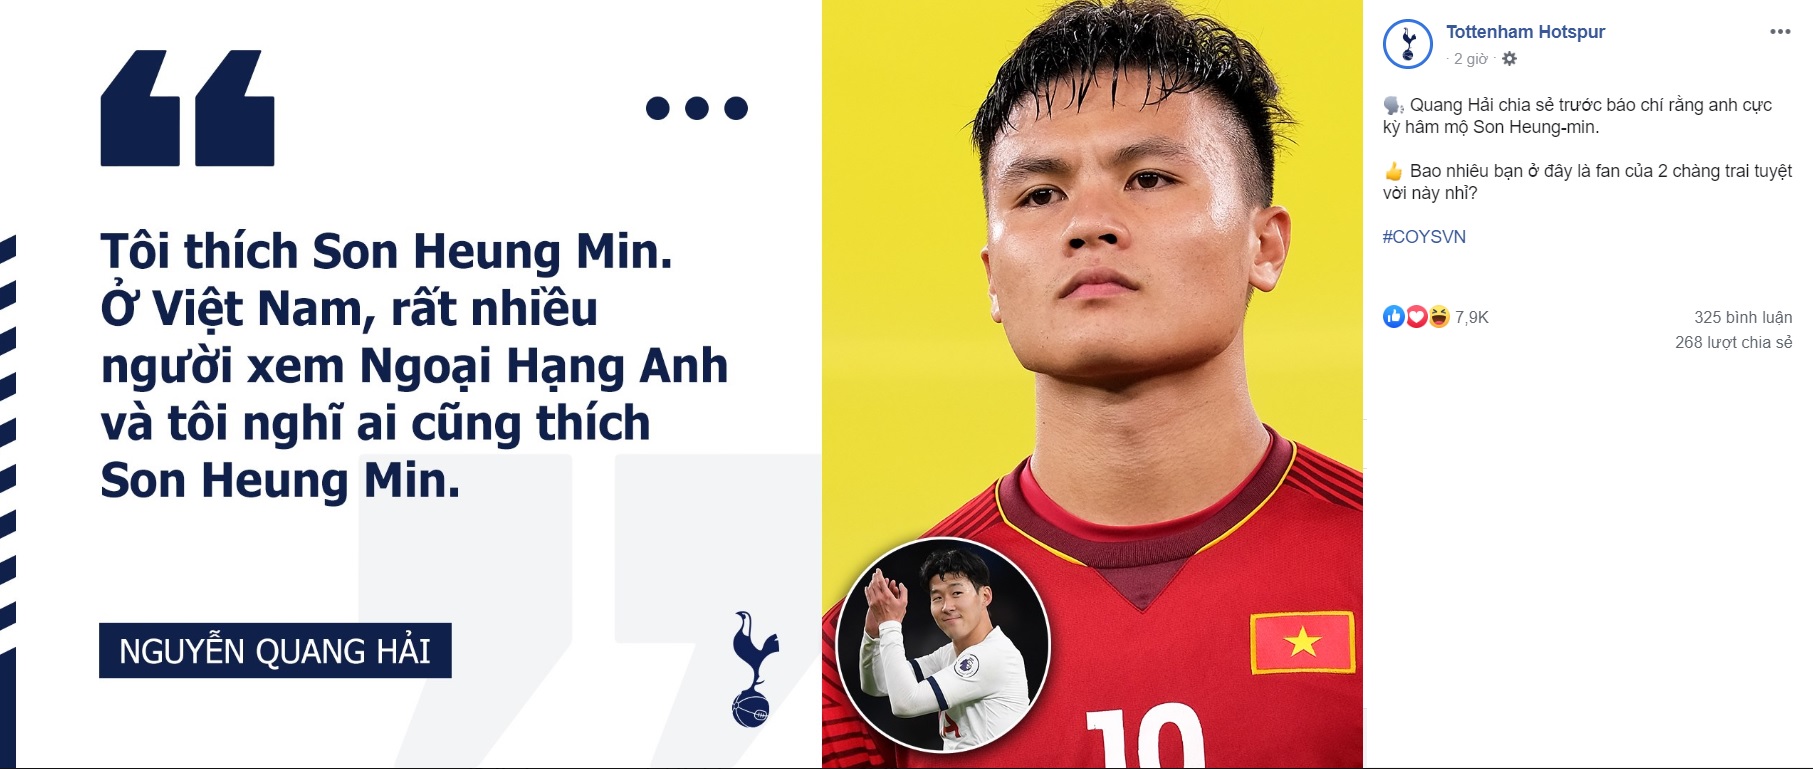 Fanpage hơn 13 triệu người theo dõi của Tottenham bất ngờ đưa tin về Quang Hải